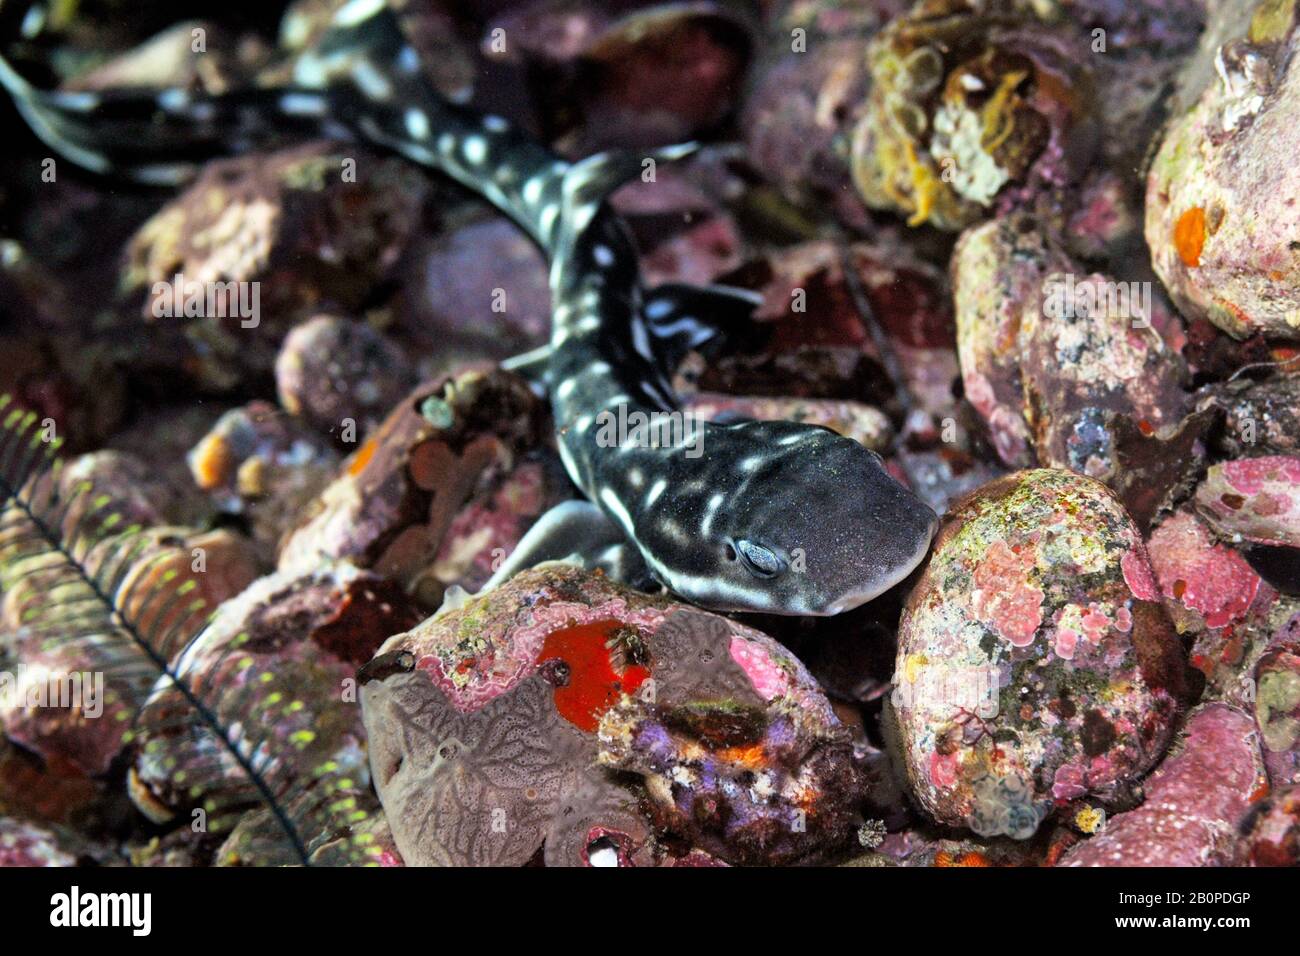 Coral catshark, Atelomycterus marmoratus, Komodo National Park, Indonesia Stock Photo